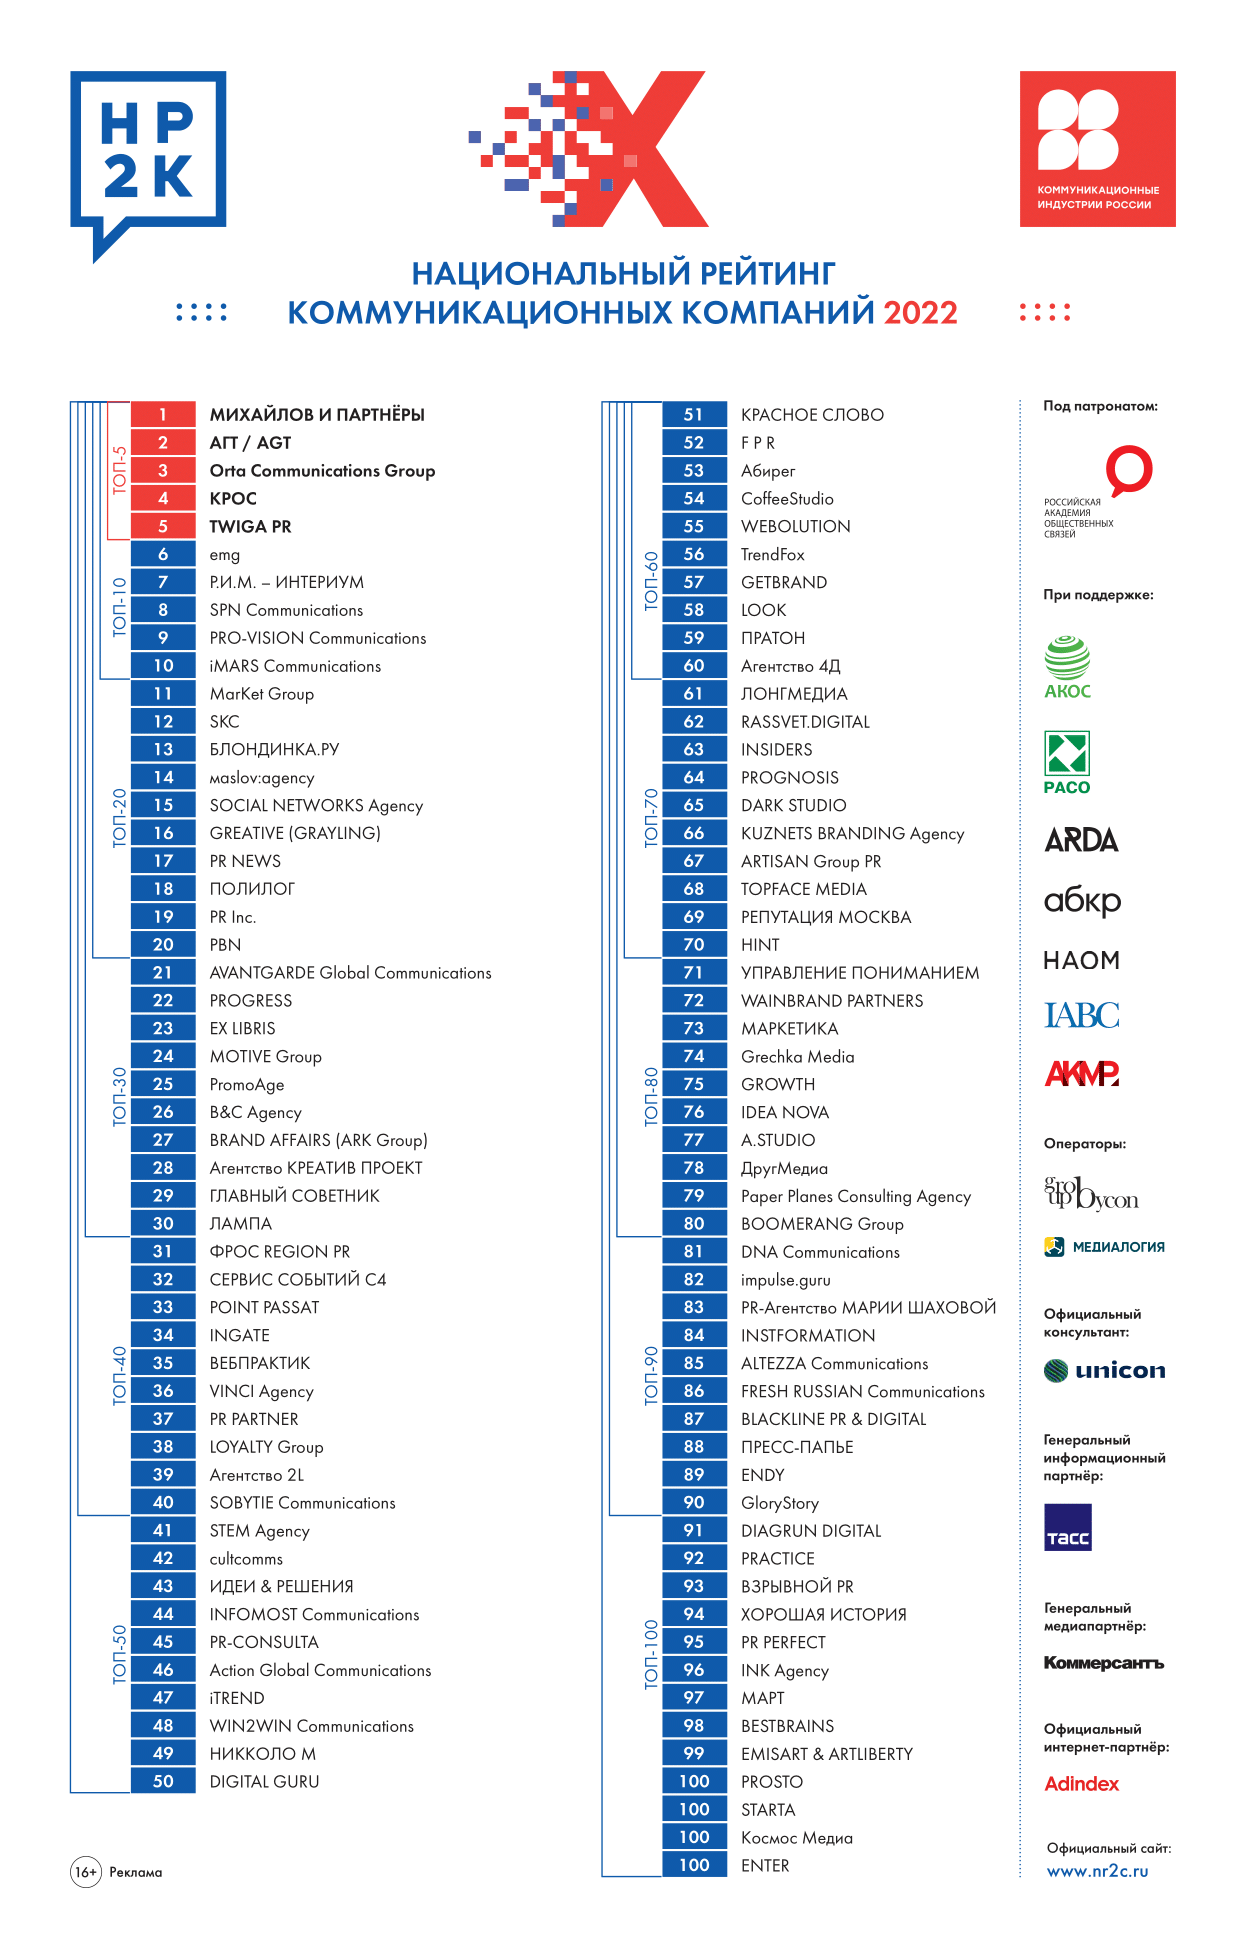 Ex Libris в топ-30 рейтинга НР2К за 2022 год